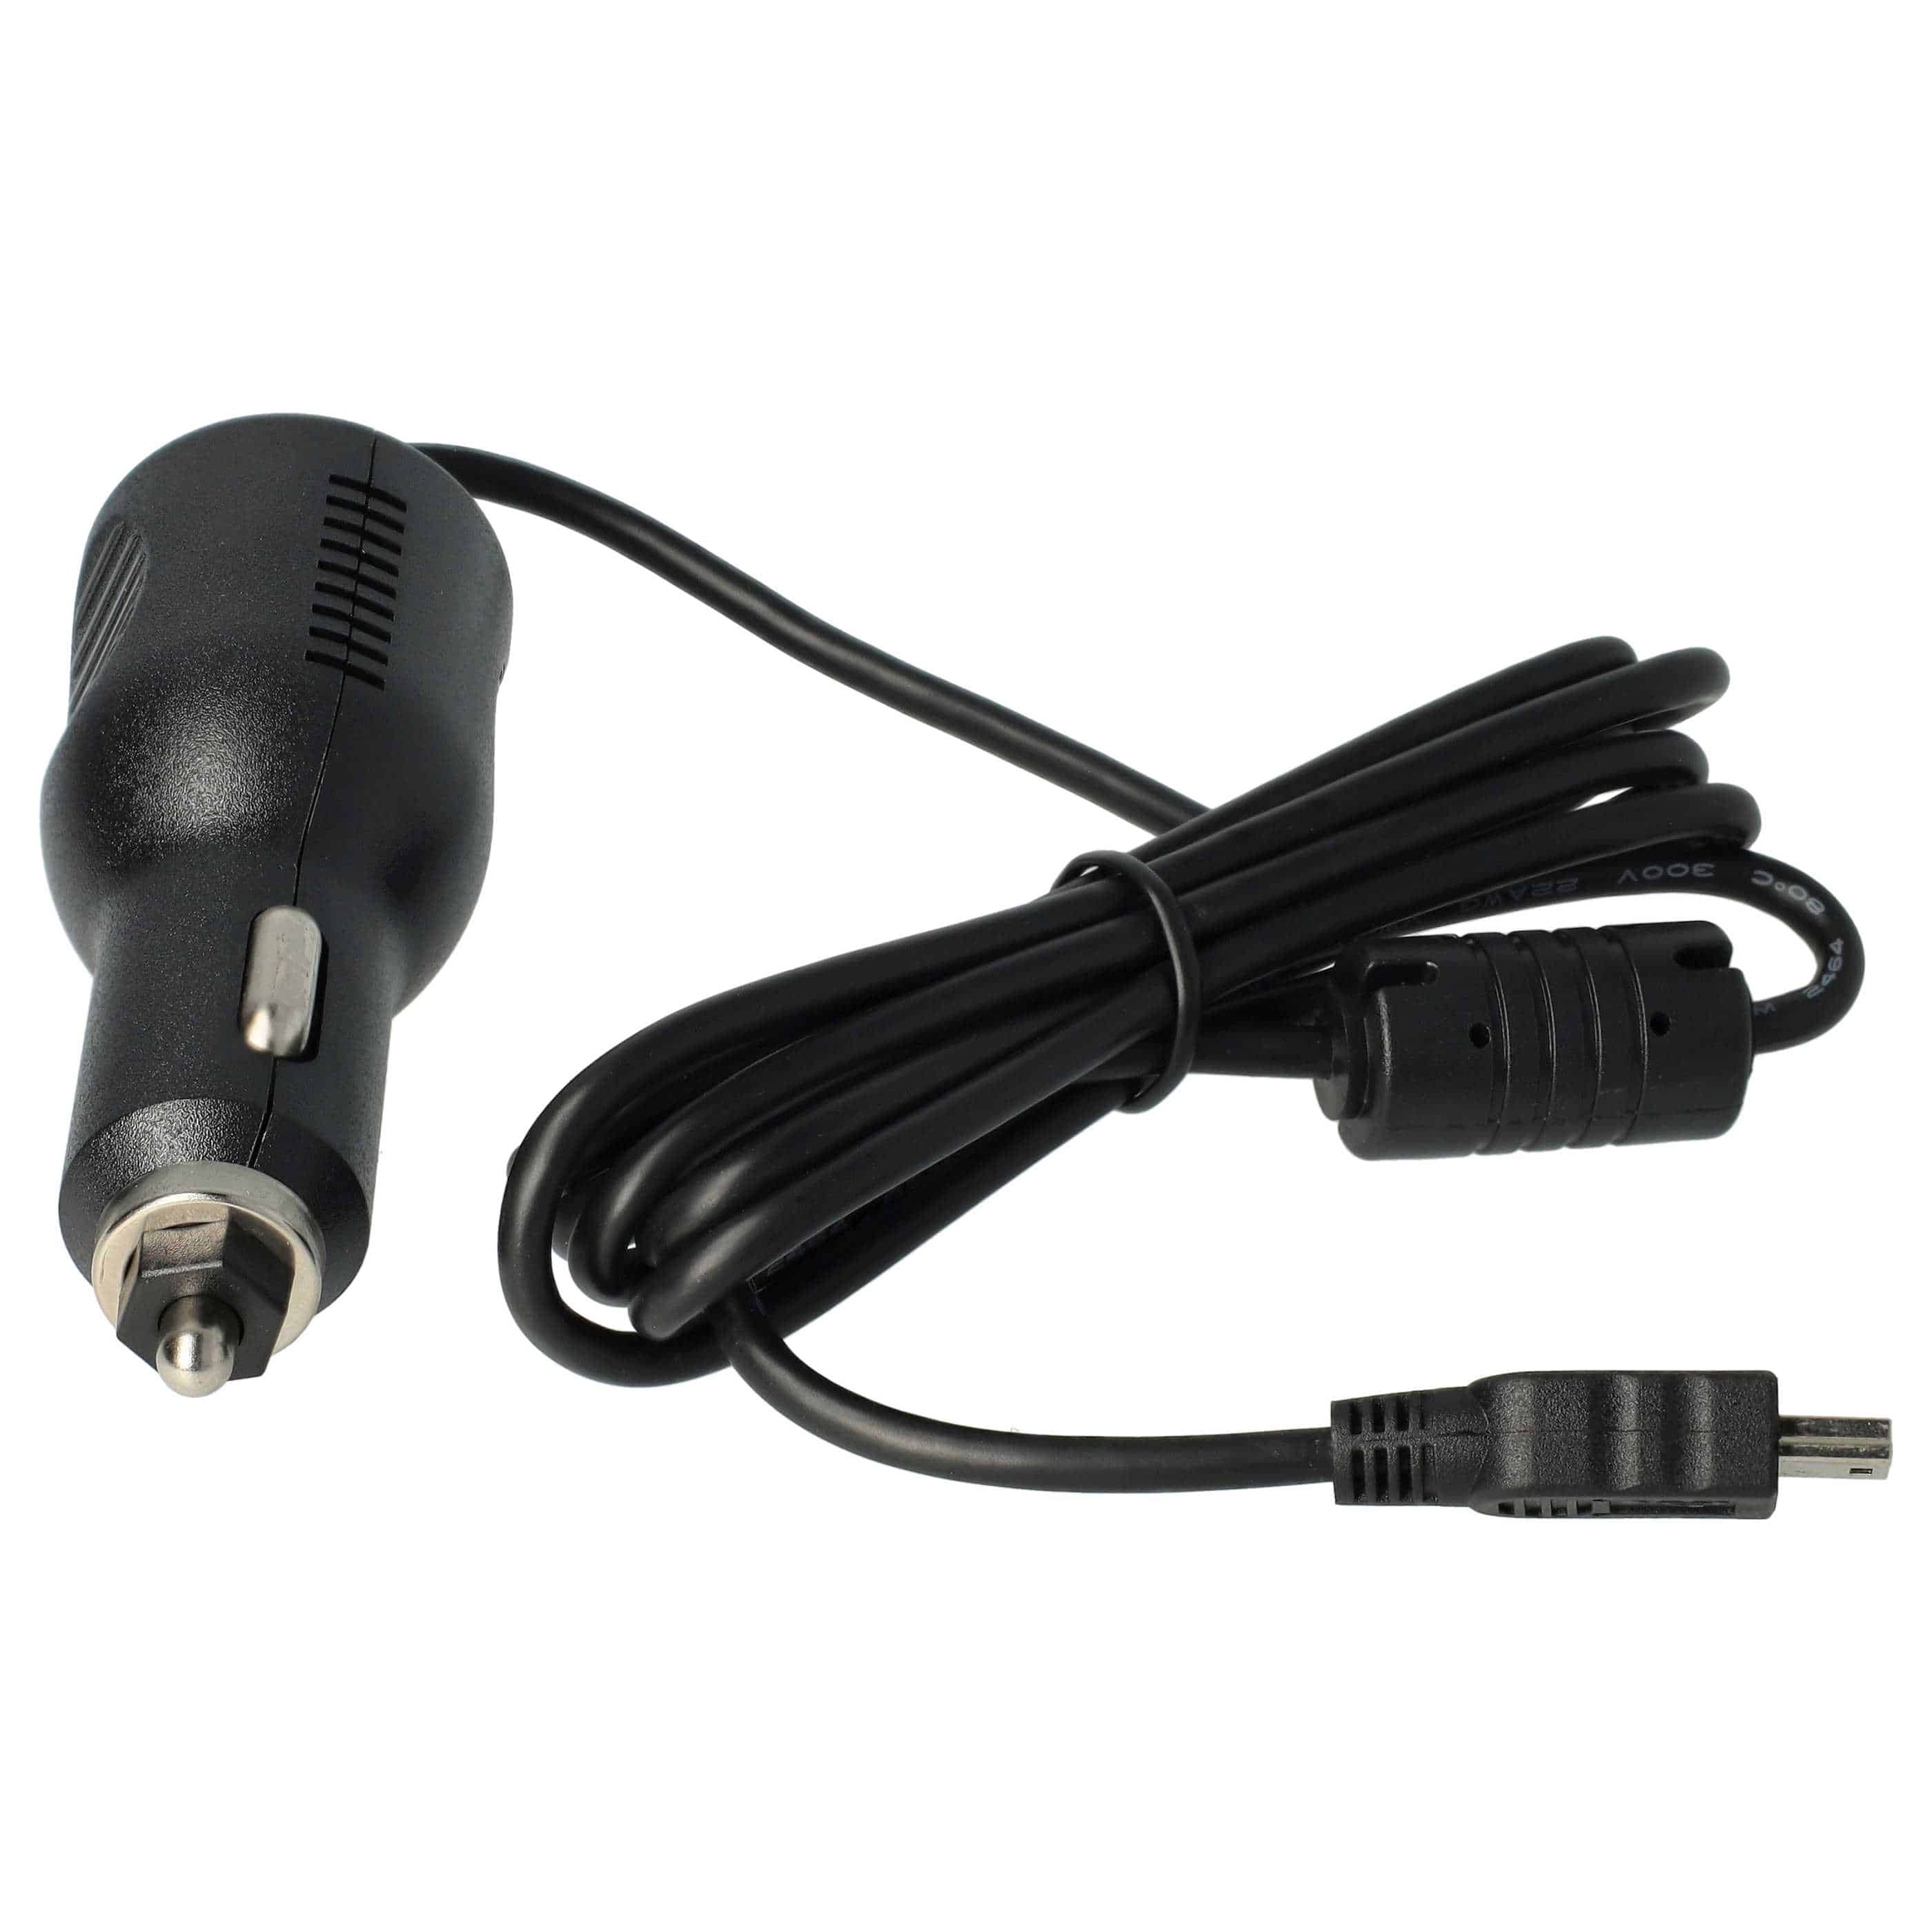 Cargador coche mini USB 2,0 A para GPS - Cable de carga, antena TMC integrada